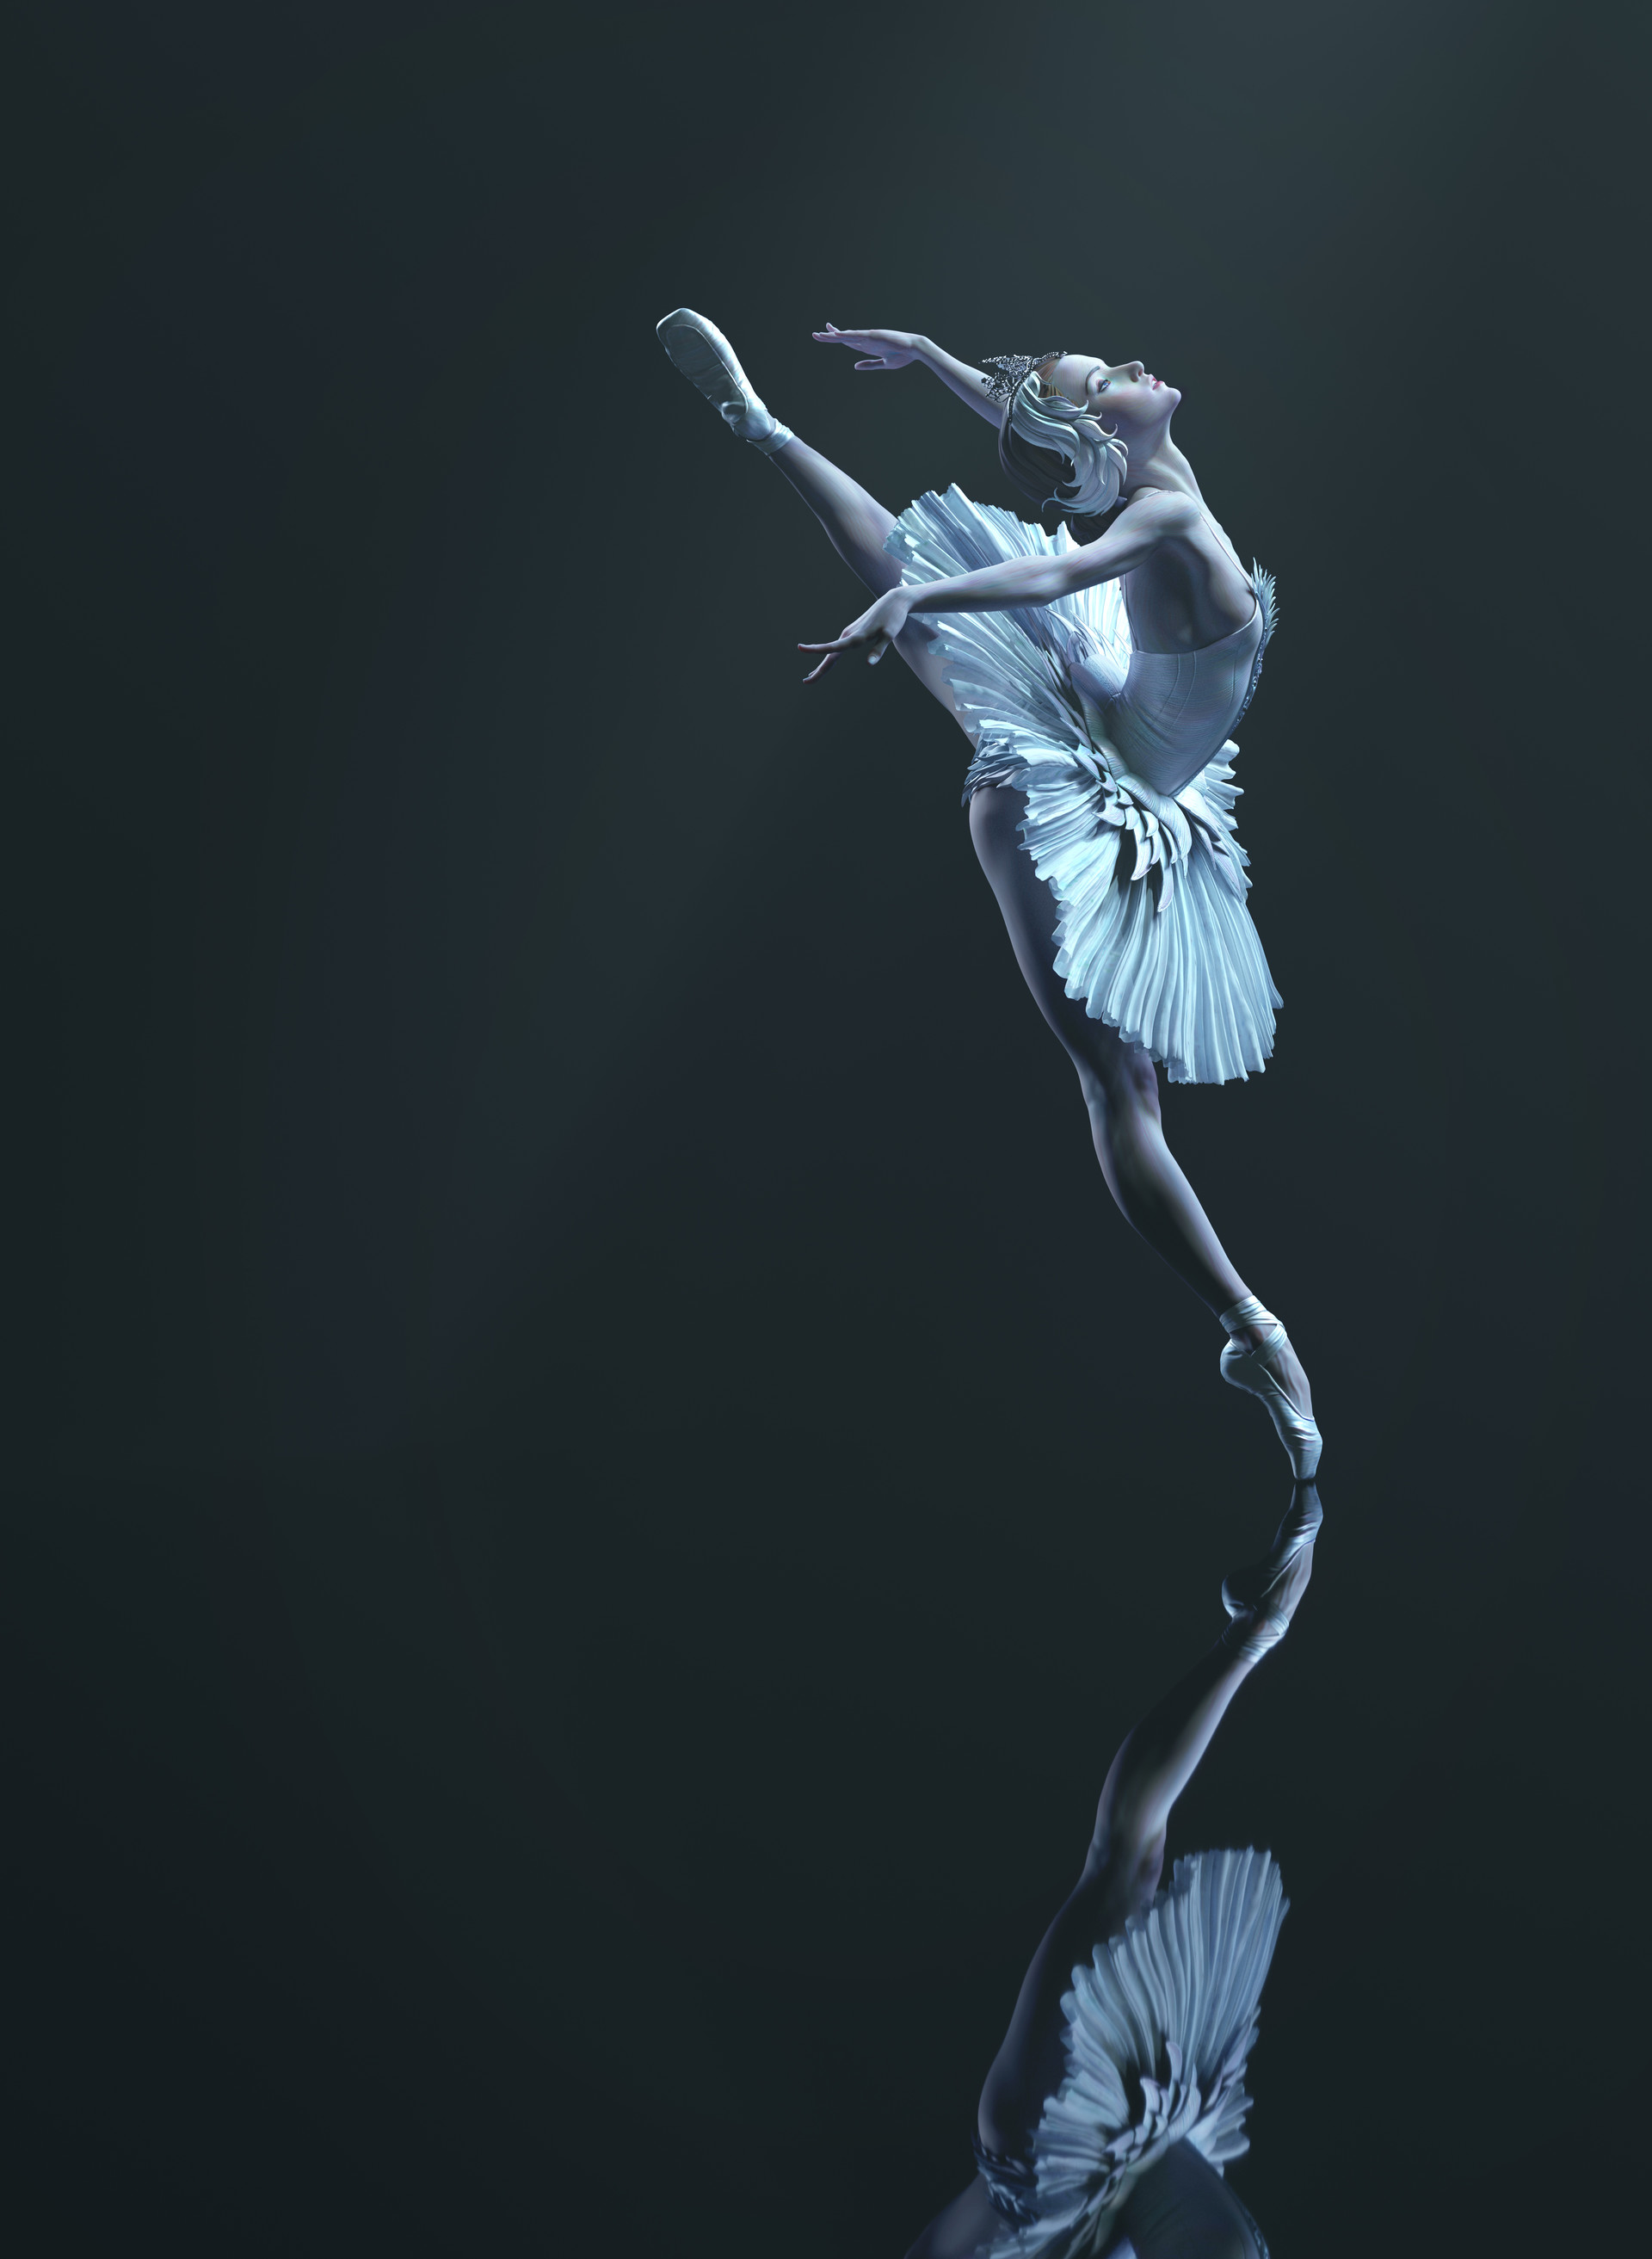 qi-sheng-luo-ballet-render01.jpg